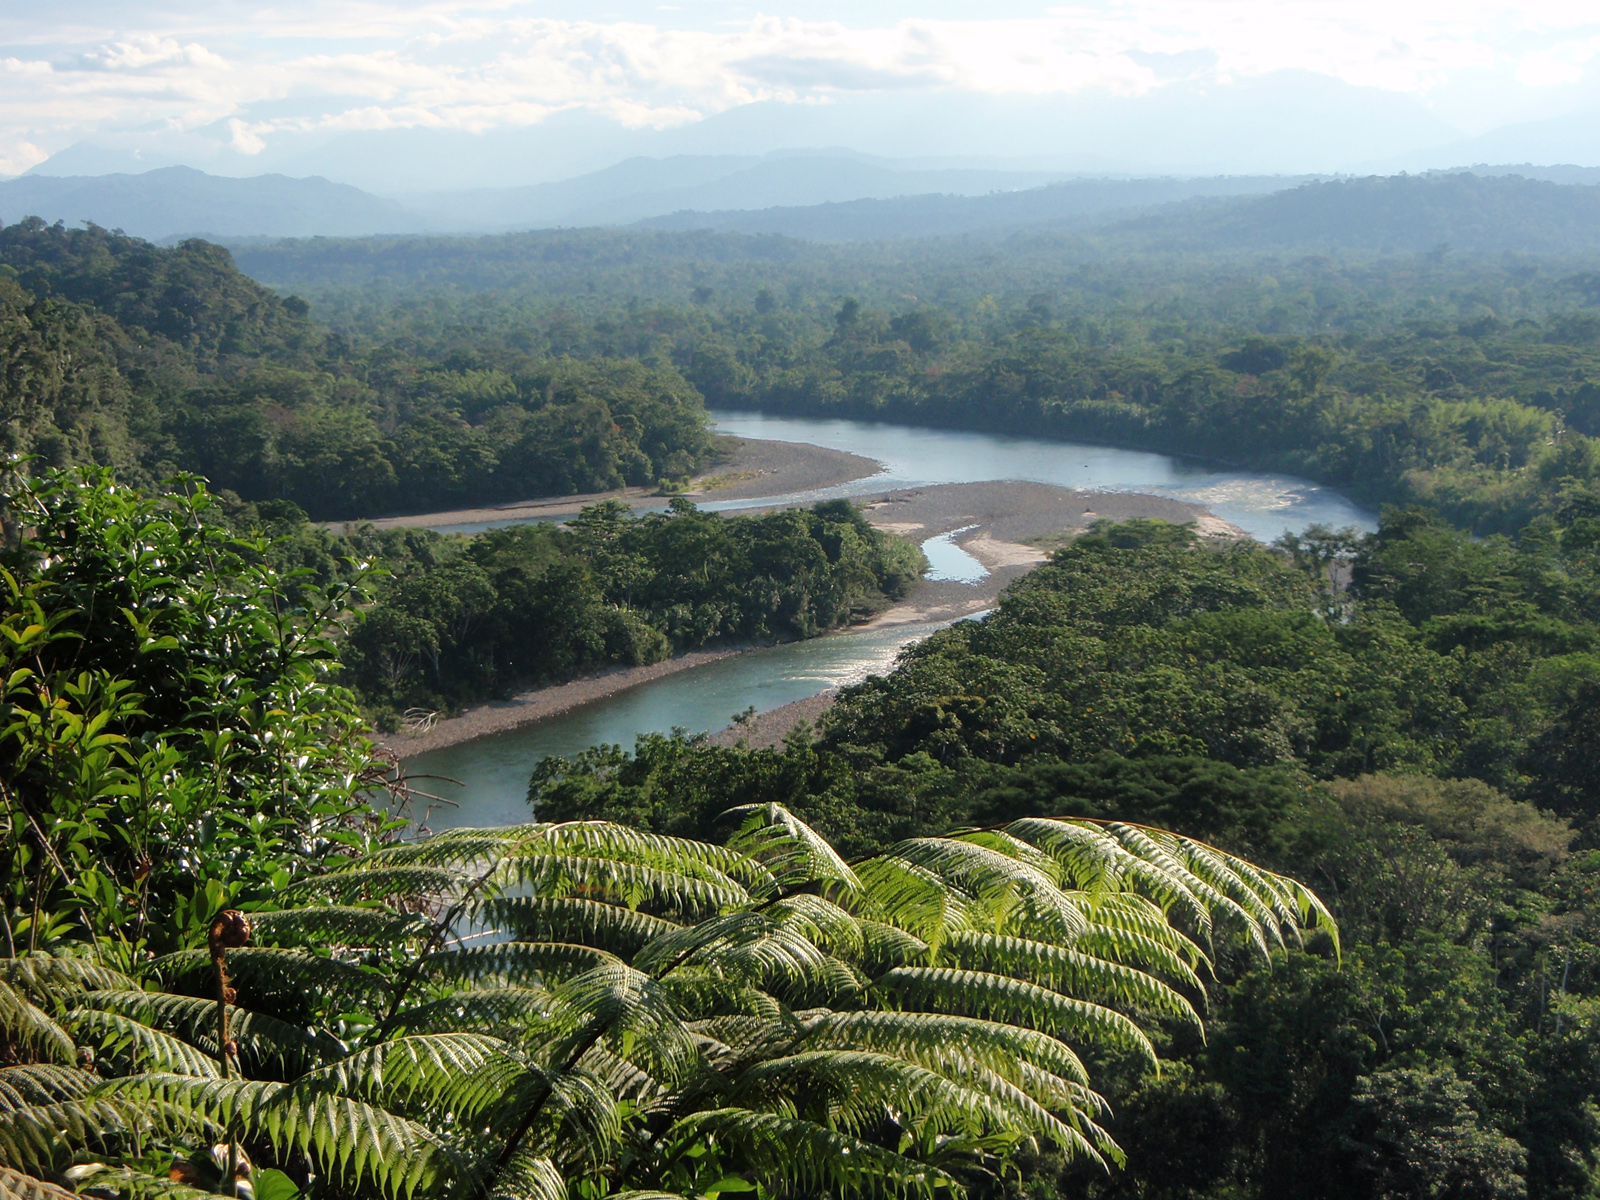 Джунгли бразилии. Бразилия тропические леса Сельва. Тропические леса амазонки в Бразилии. Тропические леса амазонки, Южная Америка. Сельва амазонки Бразилия.